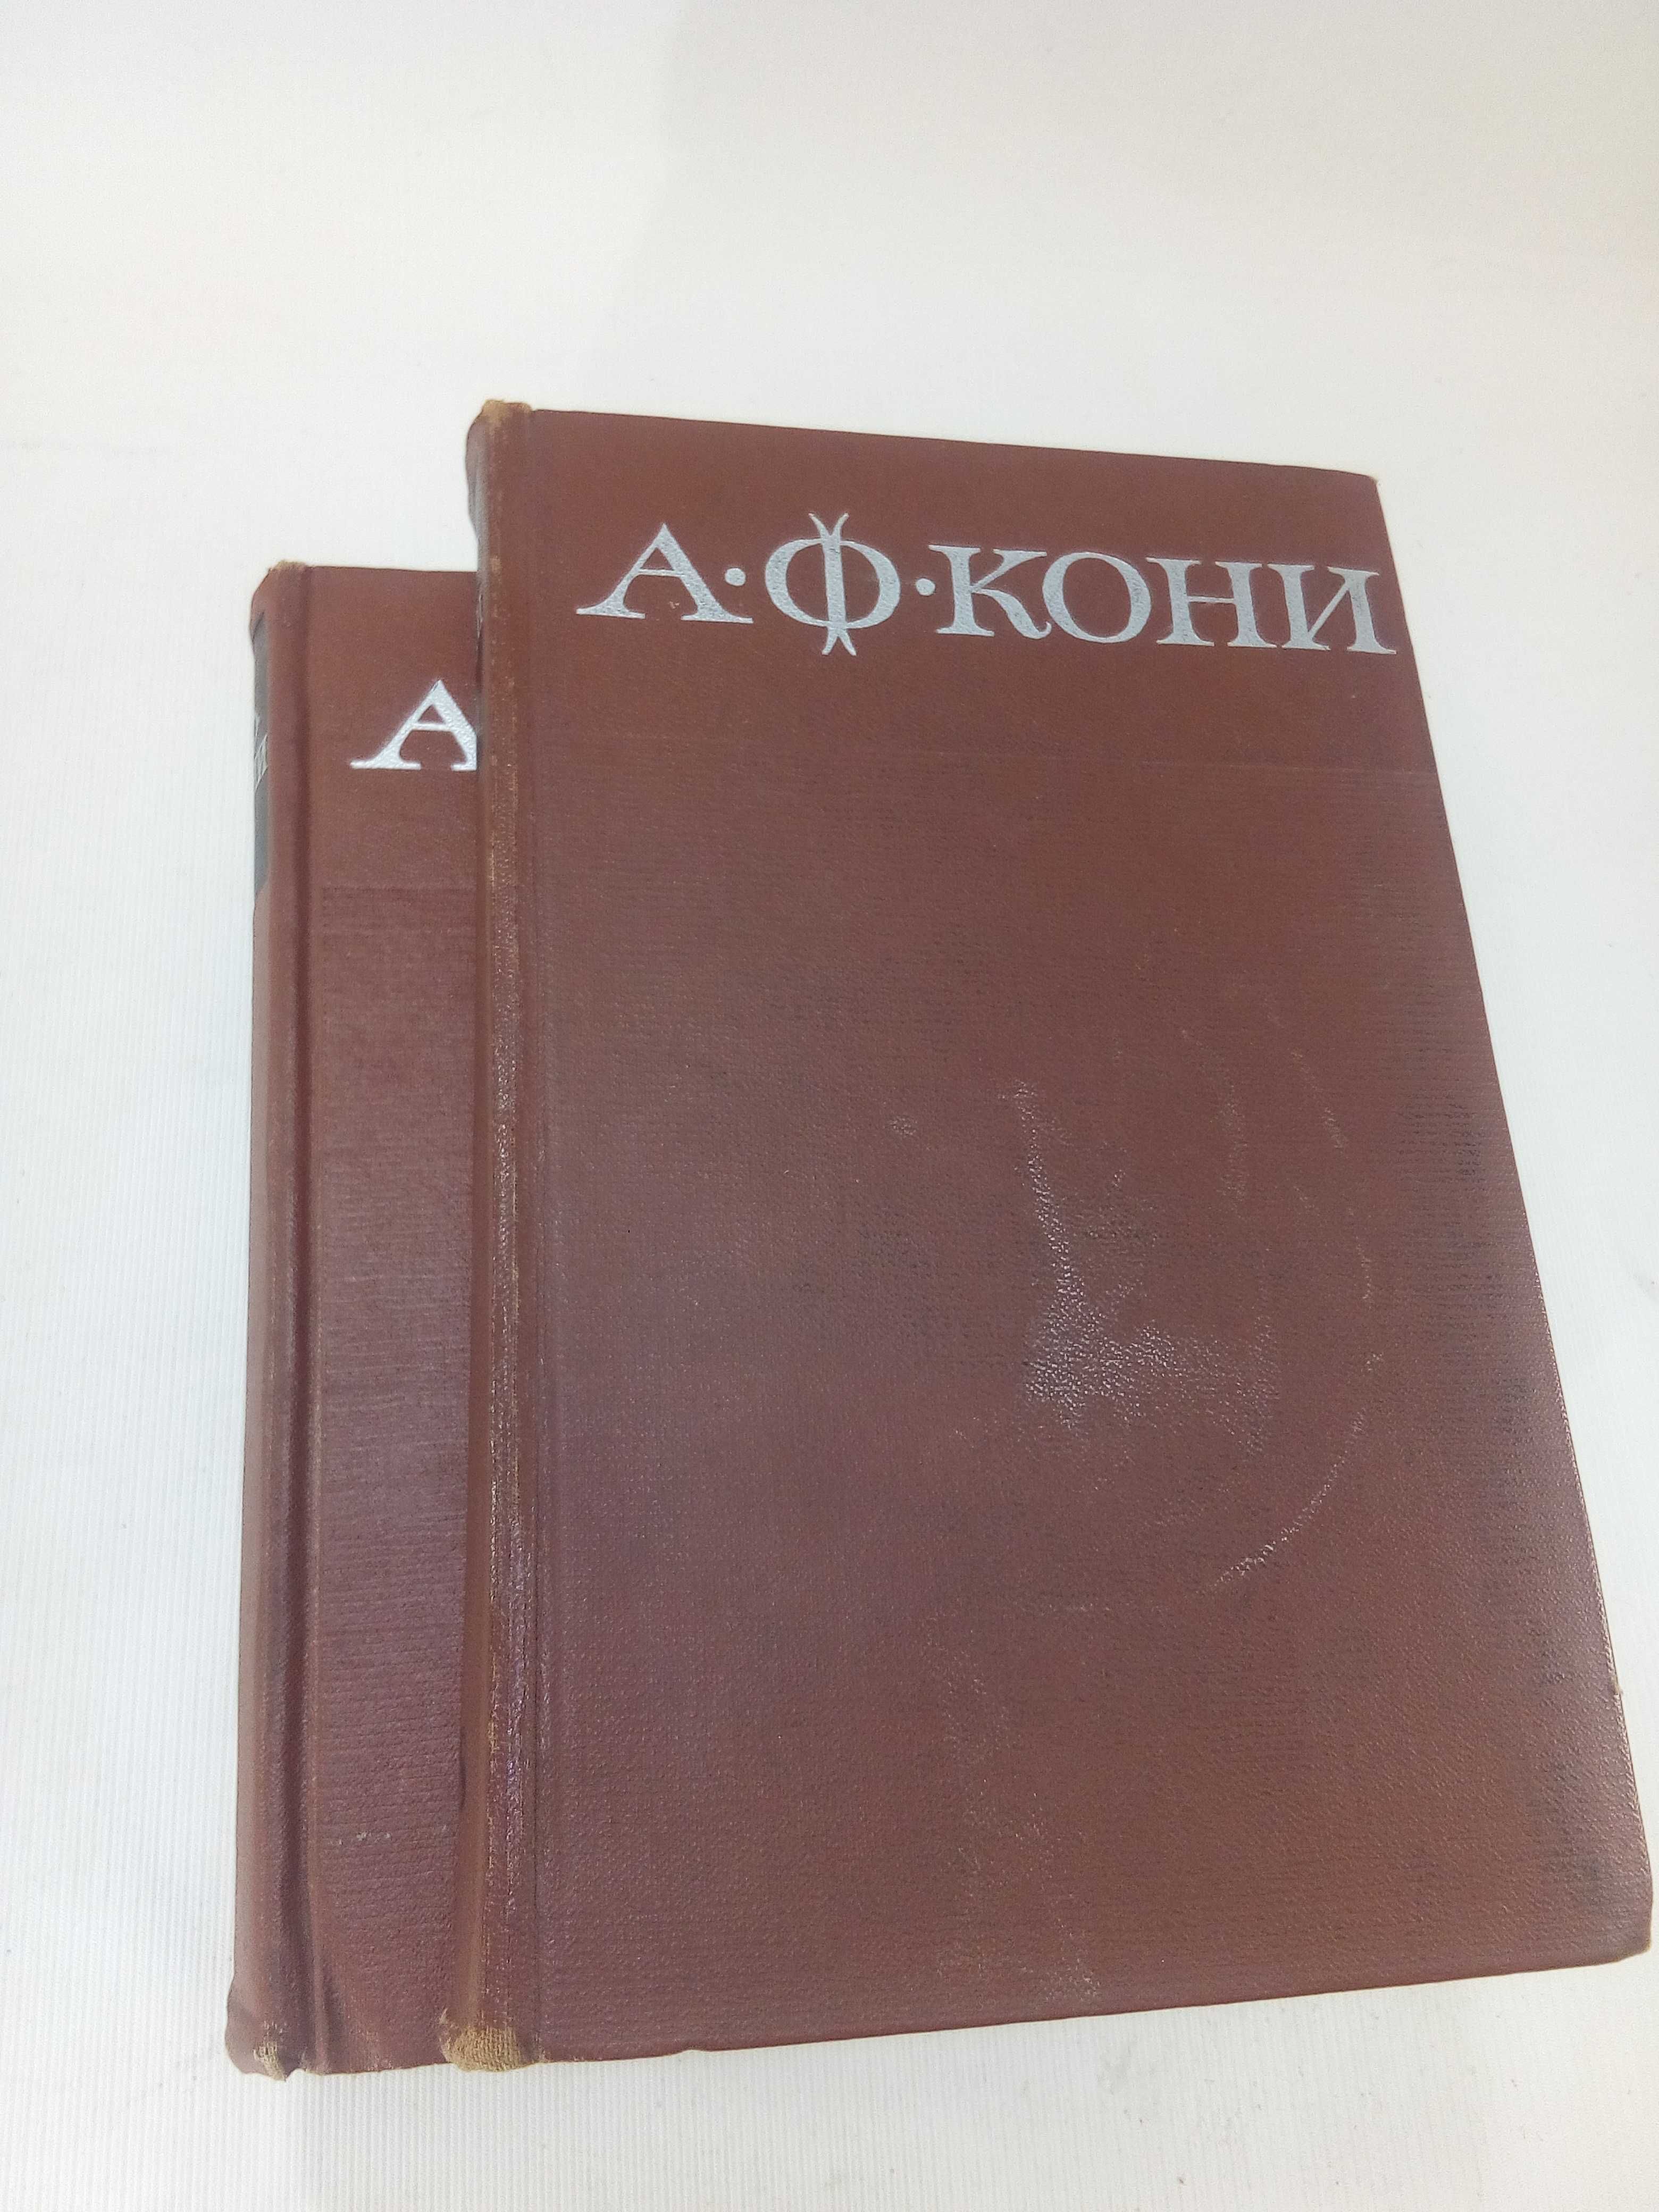 Кони А. Ф. Собрание сочинений в 8 восьми томах.